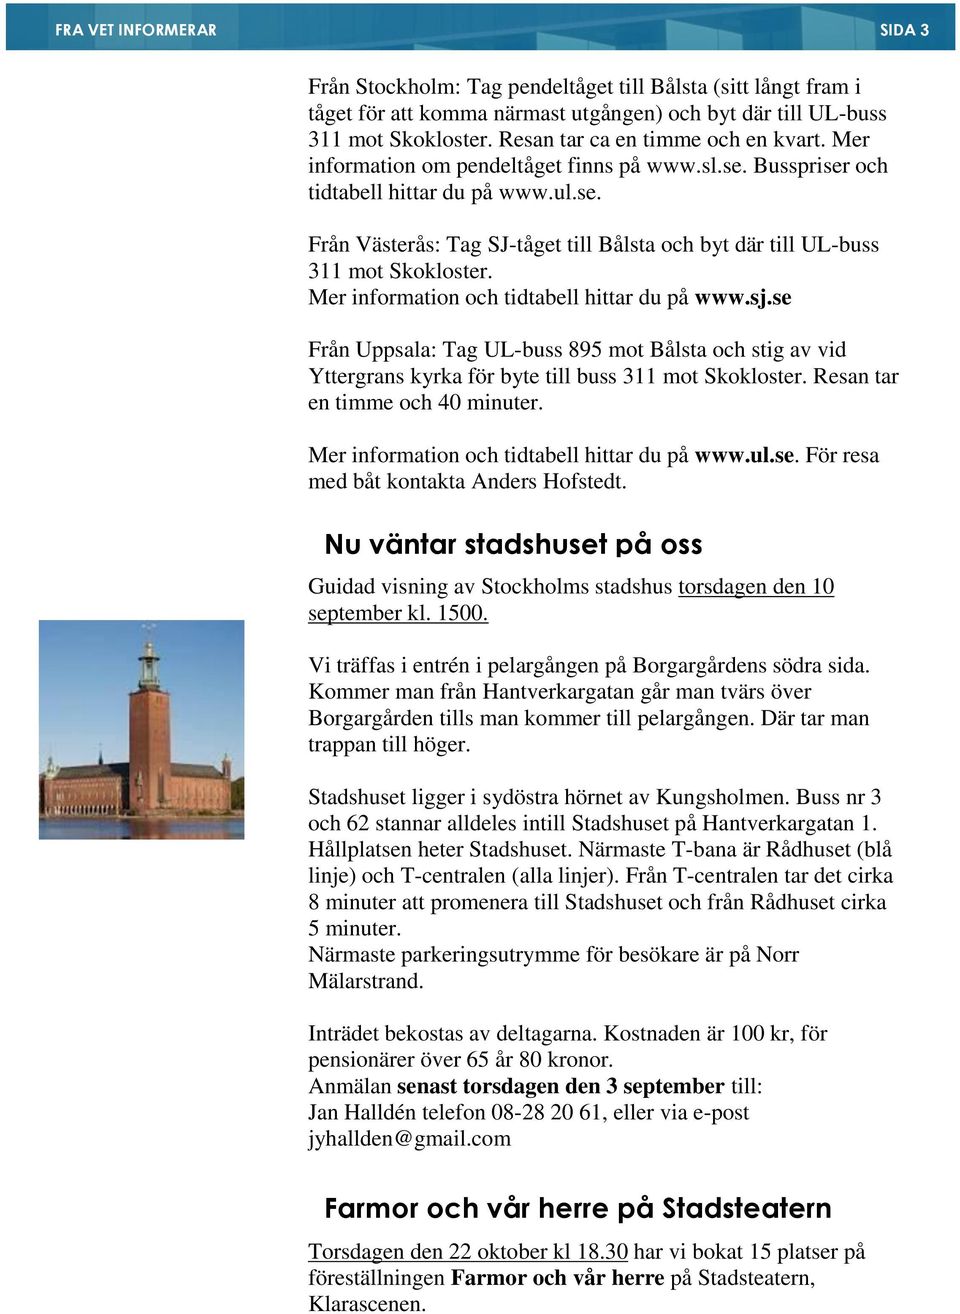 Mer information och tidtabell hittar du på www.sj.se Från Uppsala: Tag UL-buss 895 mot Bålsta och stig av vid Yttergrans kyrka för byte till buss 311 mot Skokloster. Resan tar en timme och 40 minuter.